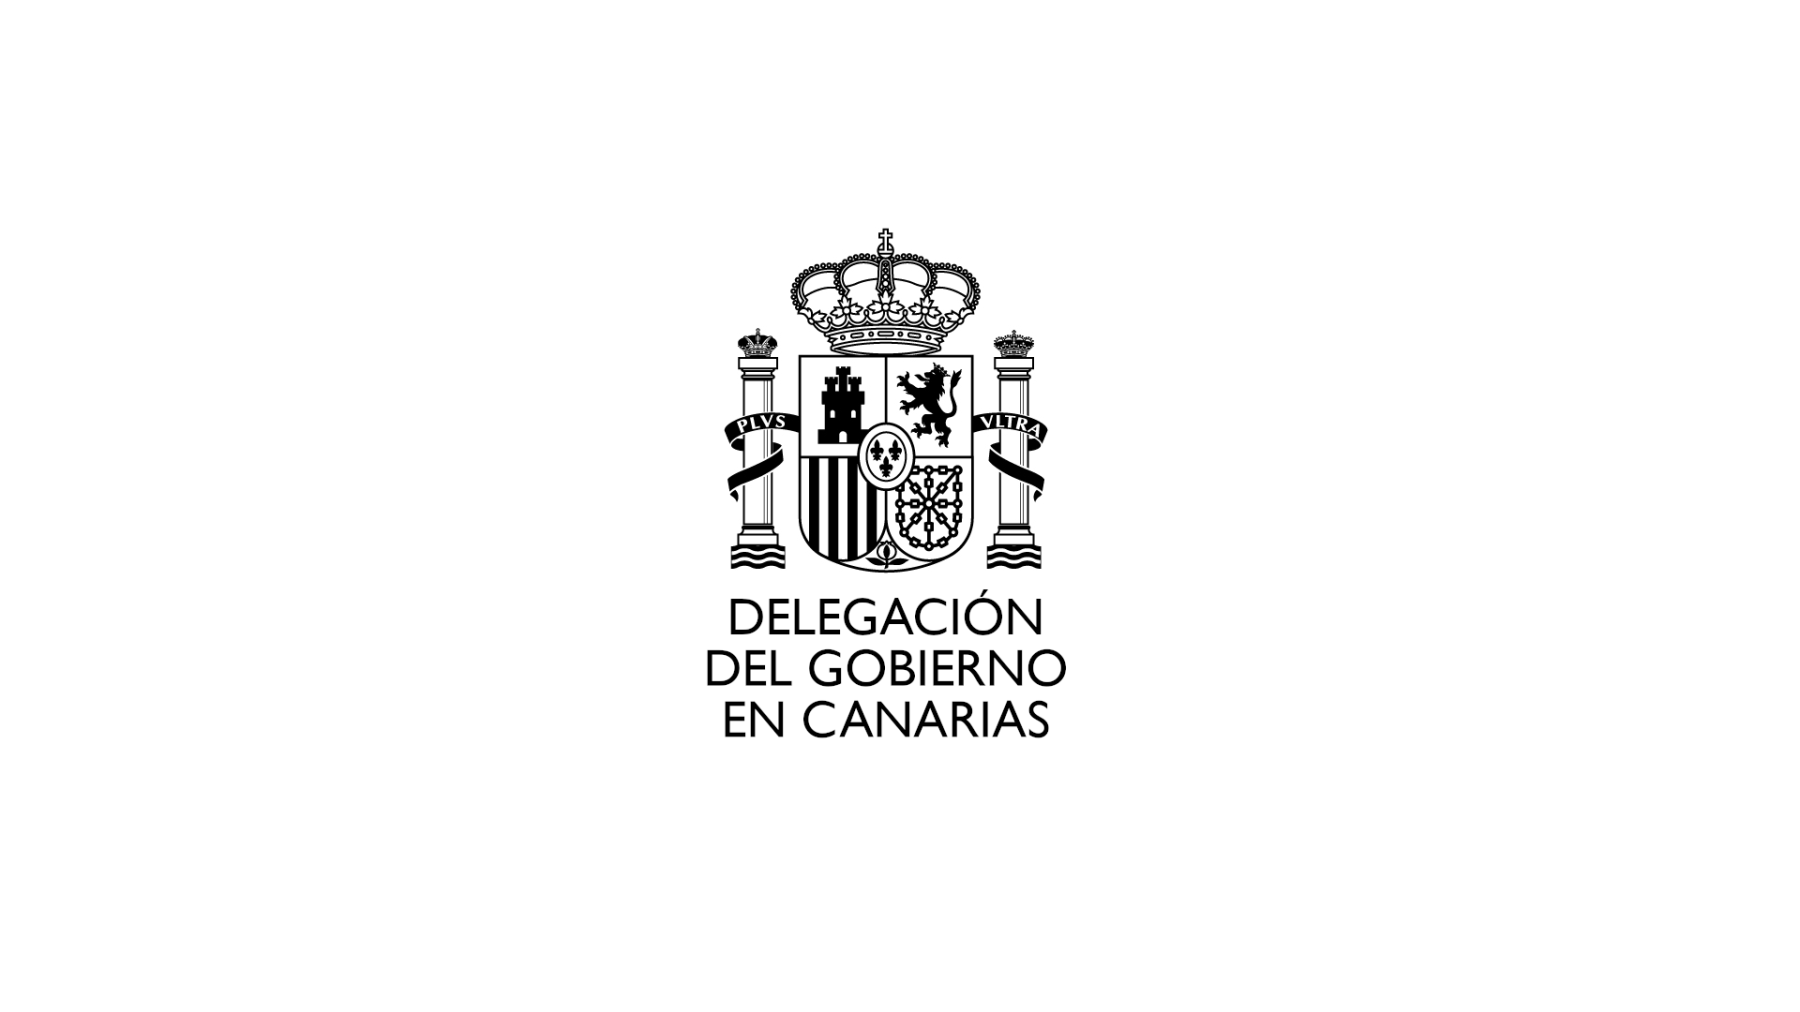 El Gobierno pone todos los medios necesarios a disposición de Canarias para extinguir el incendio de La Palma